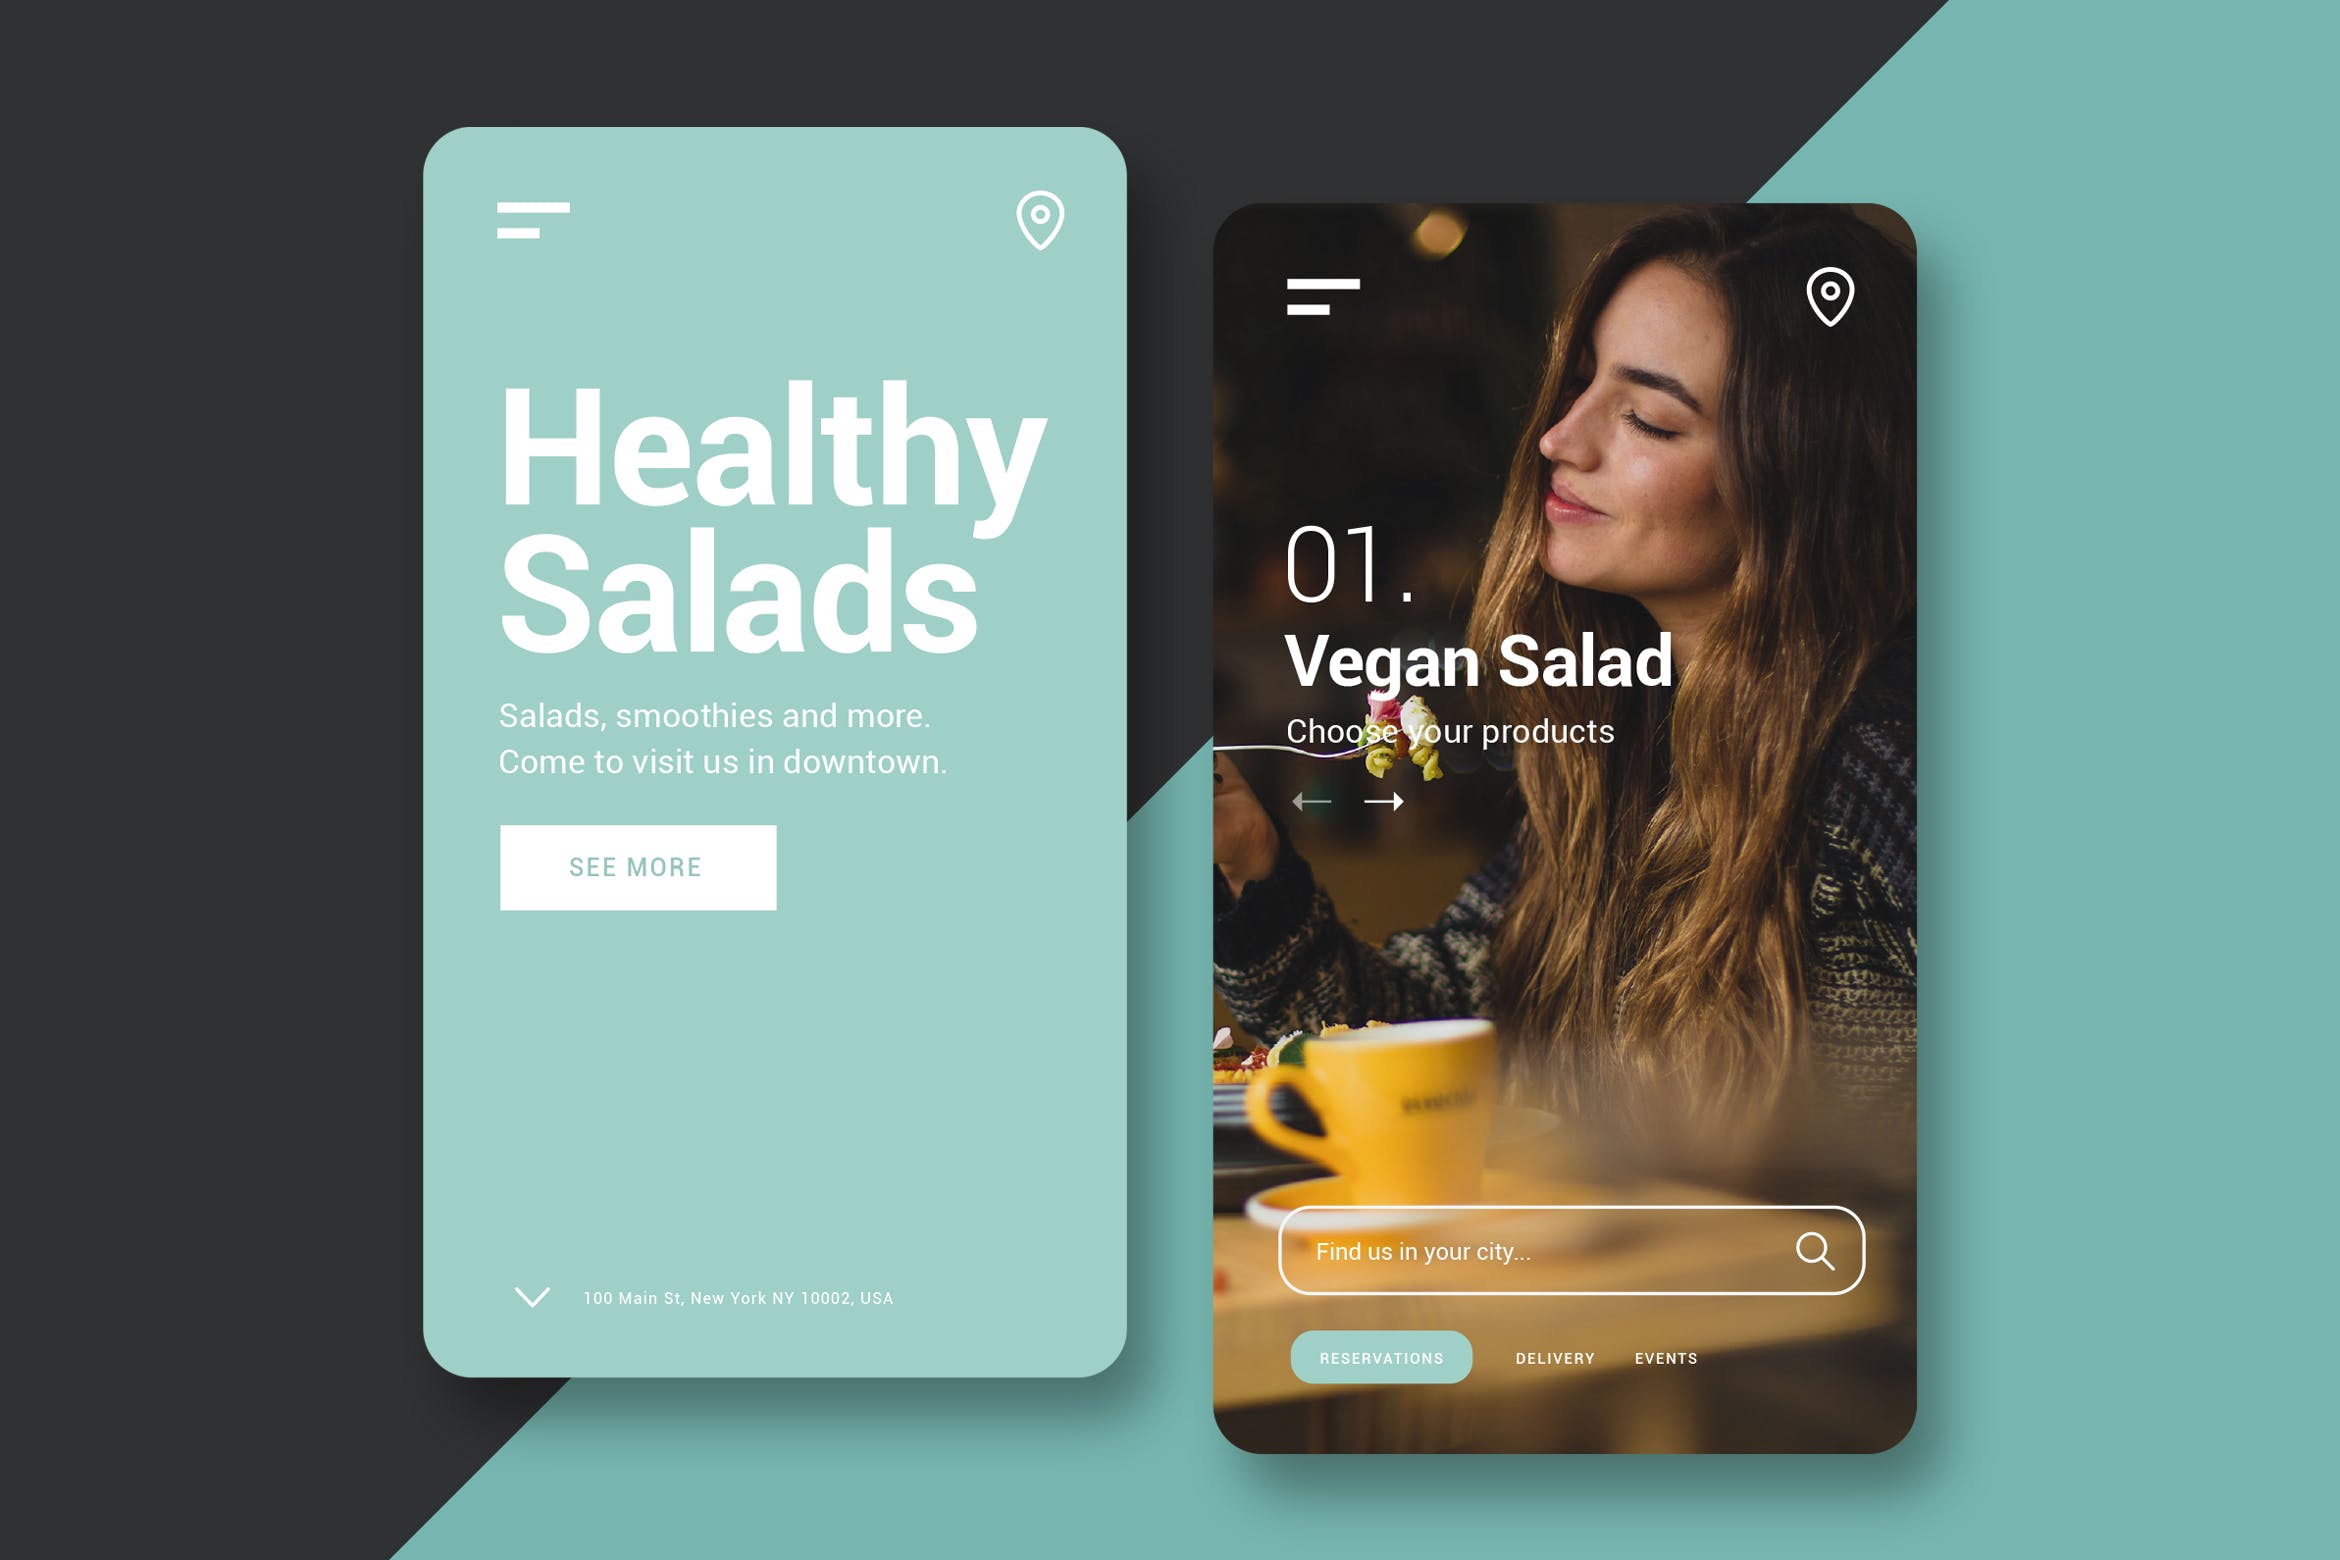 餐厅官网网站H5网站UI设计第一素材精选模板 Restaurant – Mobile UI Kit插图